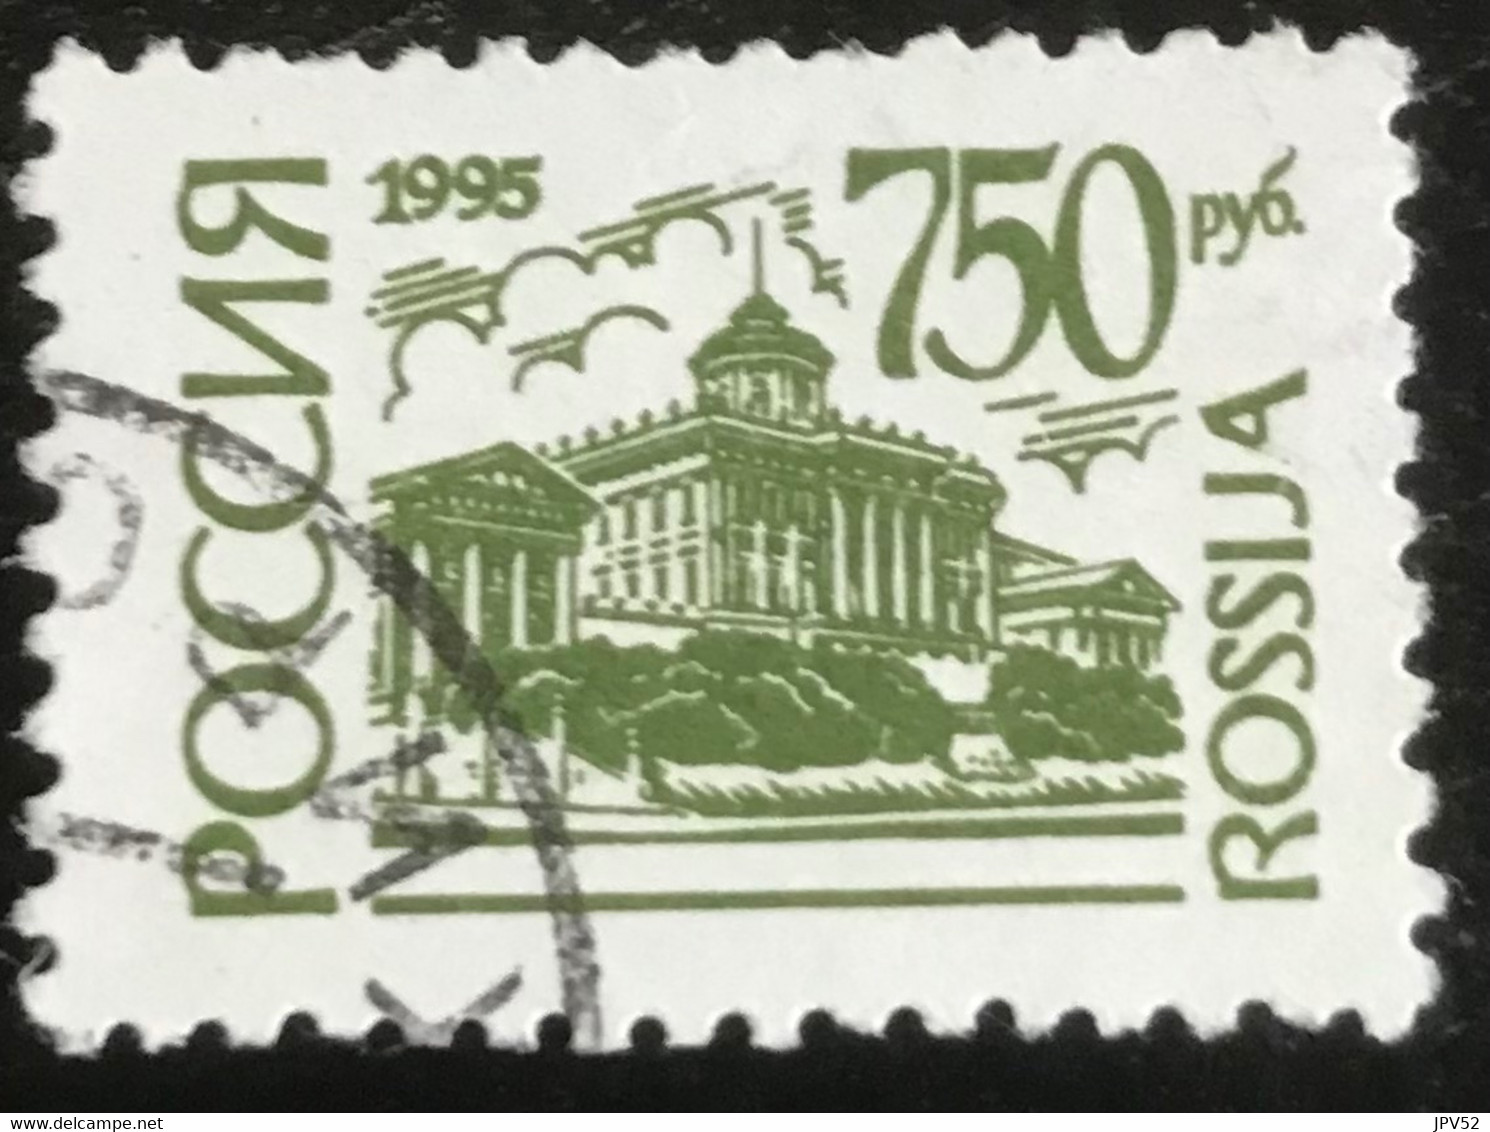 Rossija - Russische Federatie - 11/22 - (°)used - 1995 - Michel 418 - Monumenten - Usati